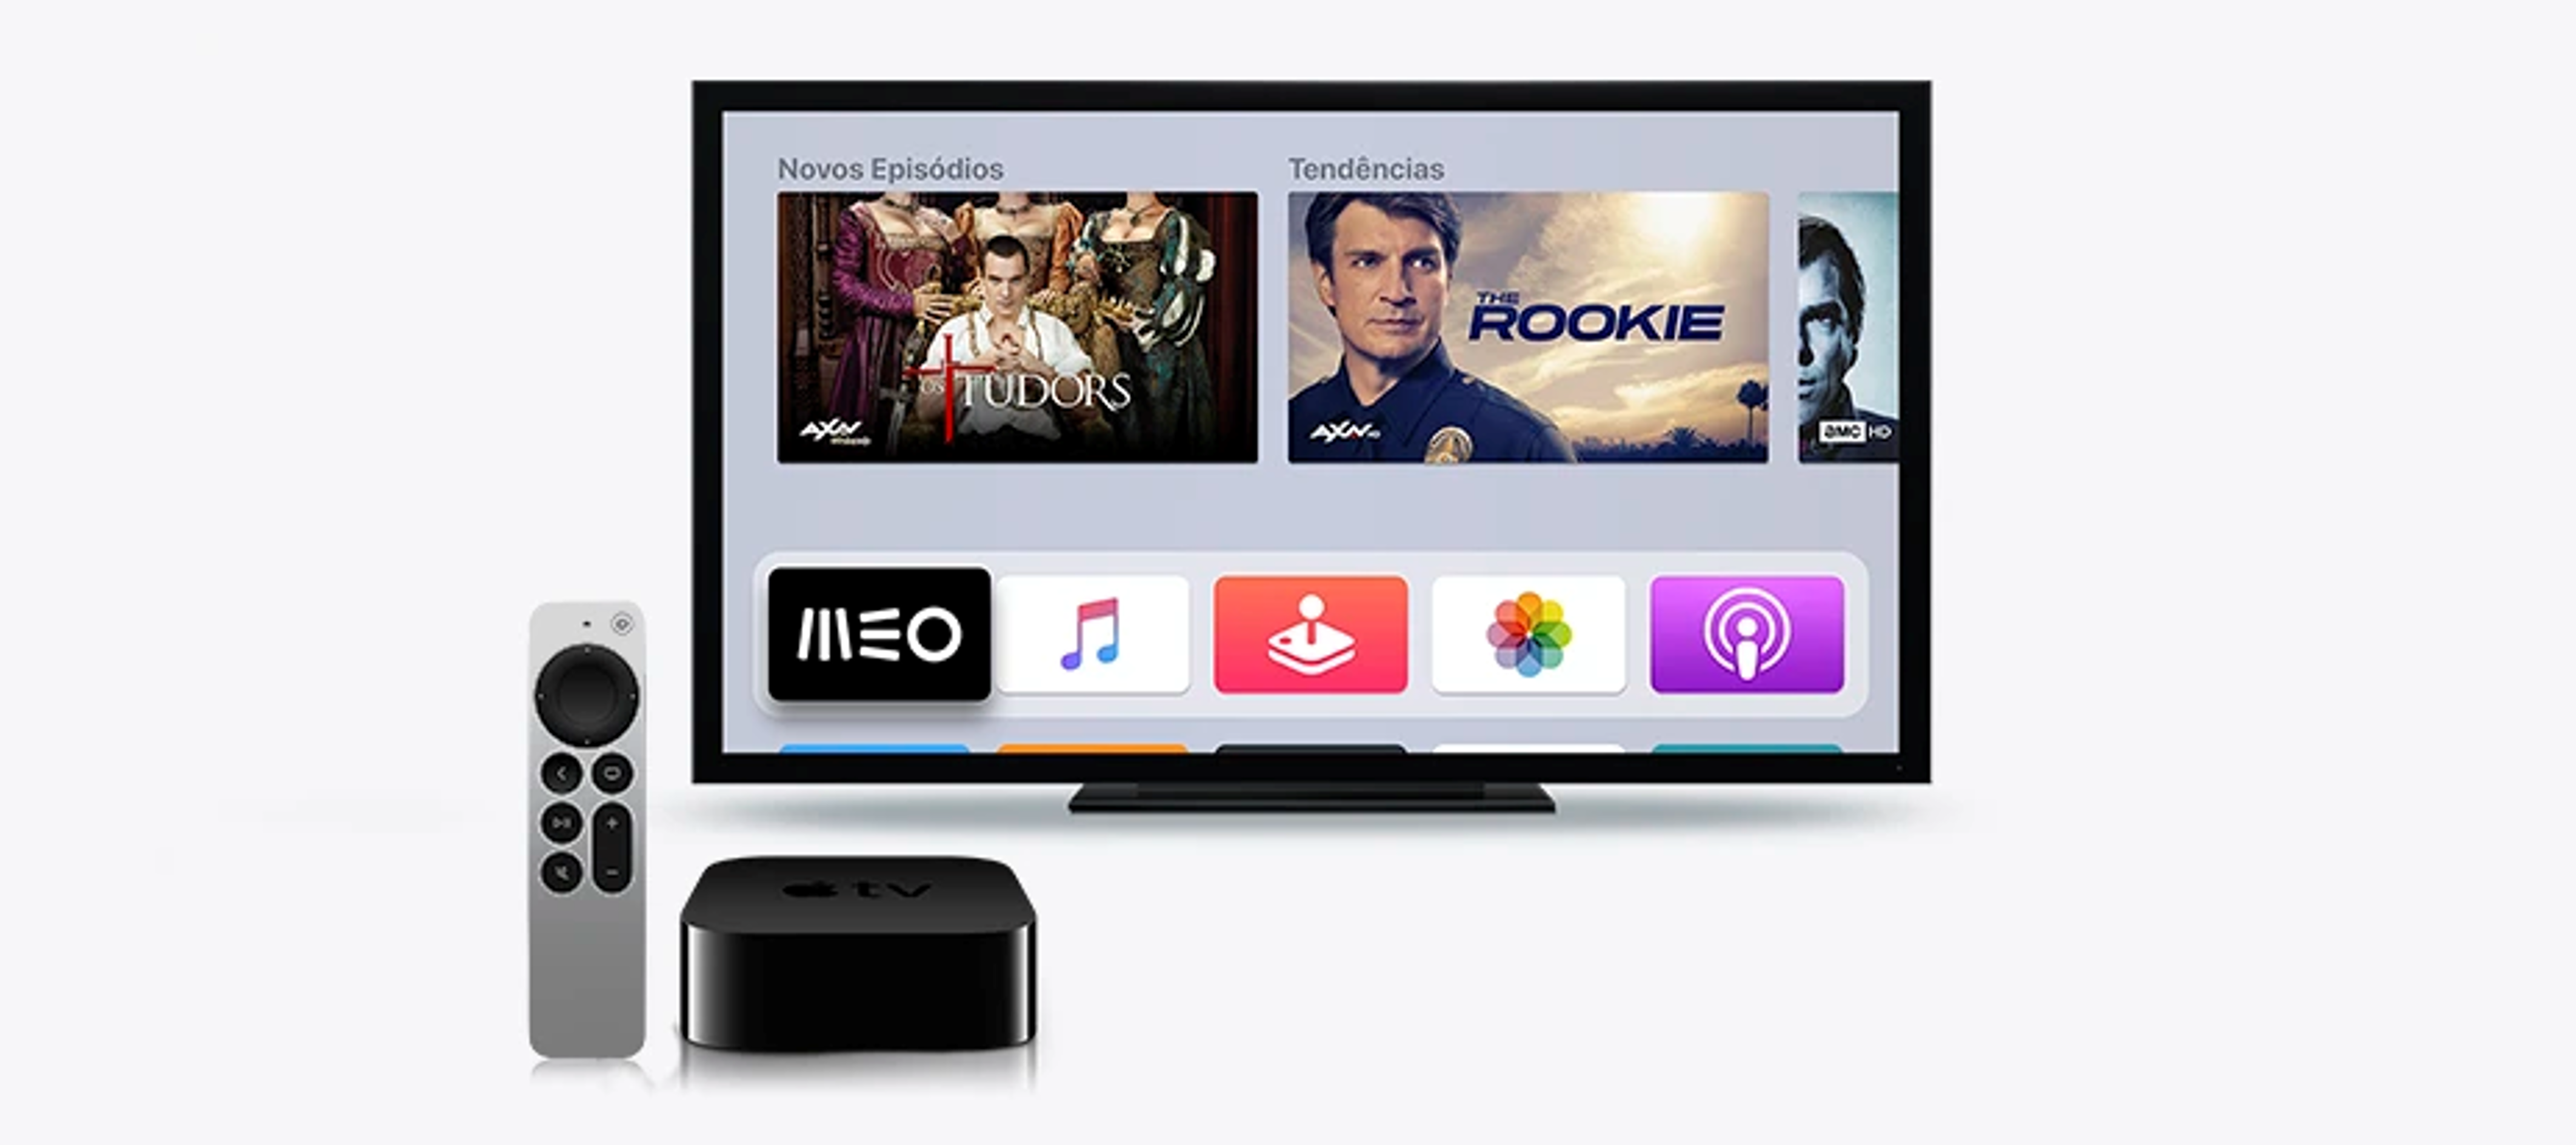 Nova versão App MEO Apple TV